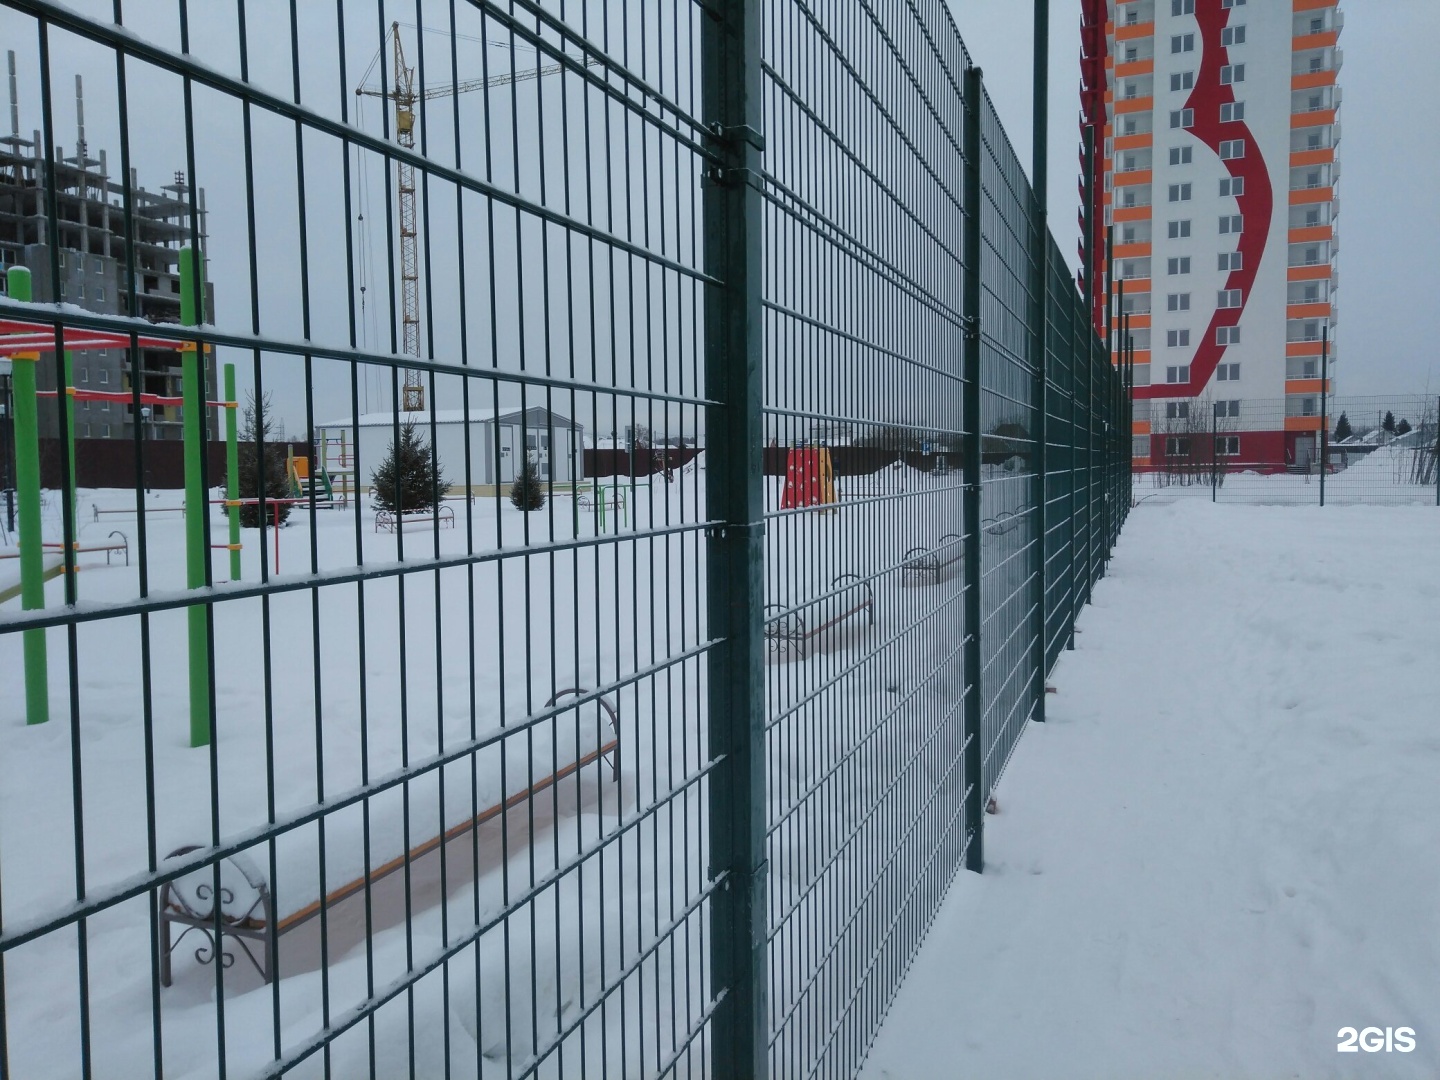 Забор красный проспект Новосибирск. Калинина забор Новосибирск. Ограждение новосибирск